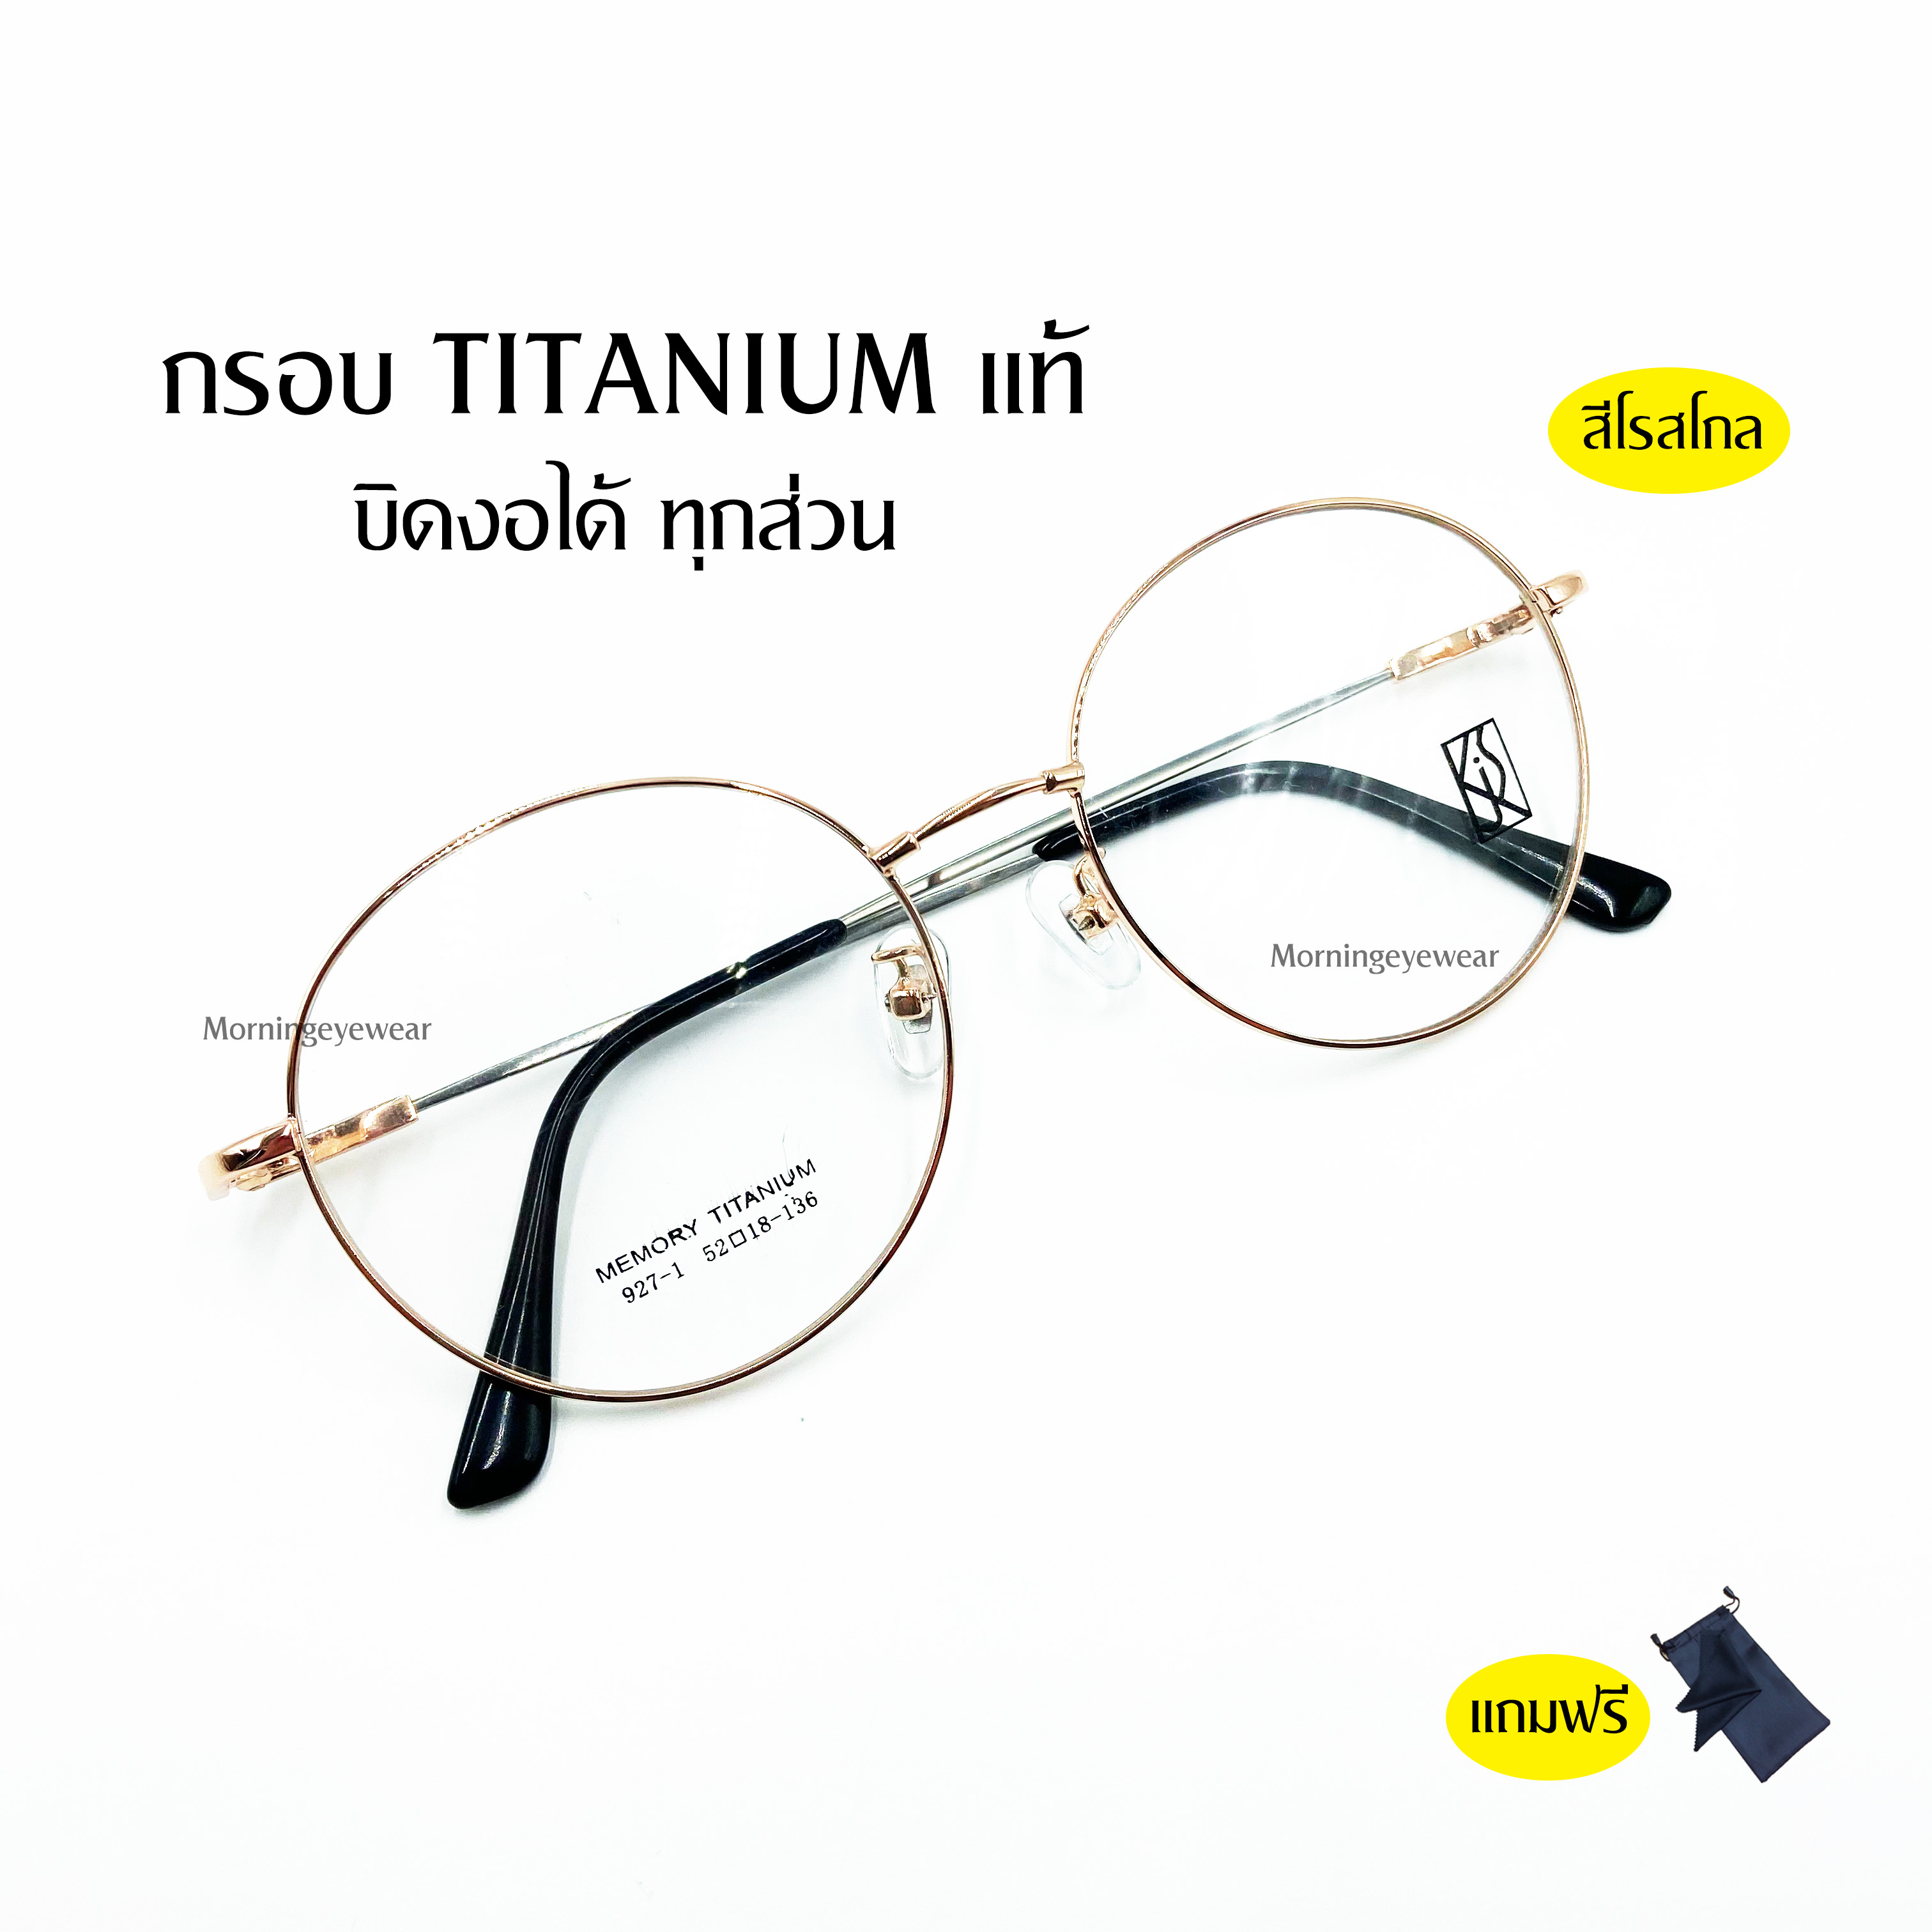 แว่น titanium02 ยืดหยุ่นทุกส่วน งอได้ทุกส่วน น้ำหนักเบา (สินค้ามีพร้อมส่งจ้า)